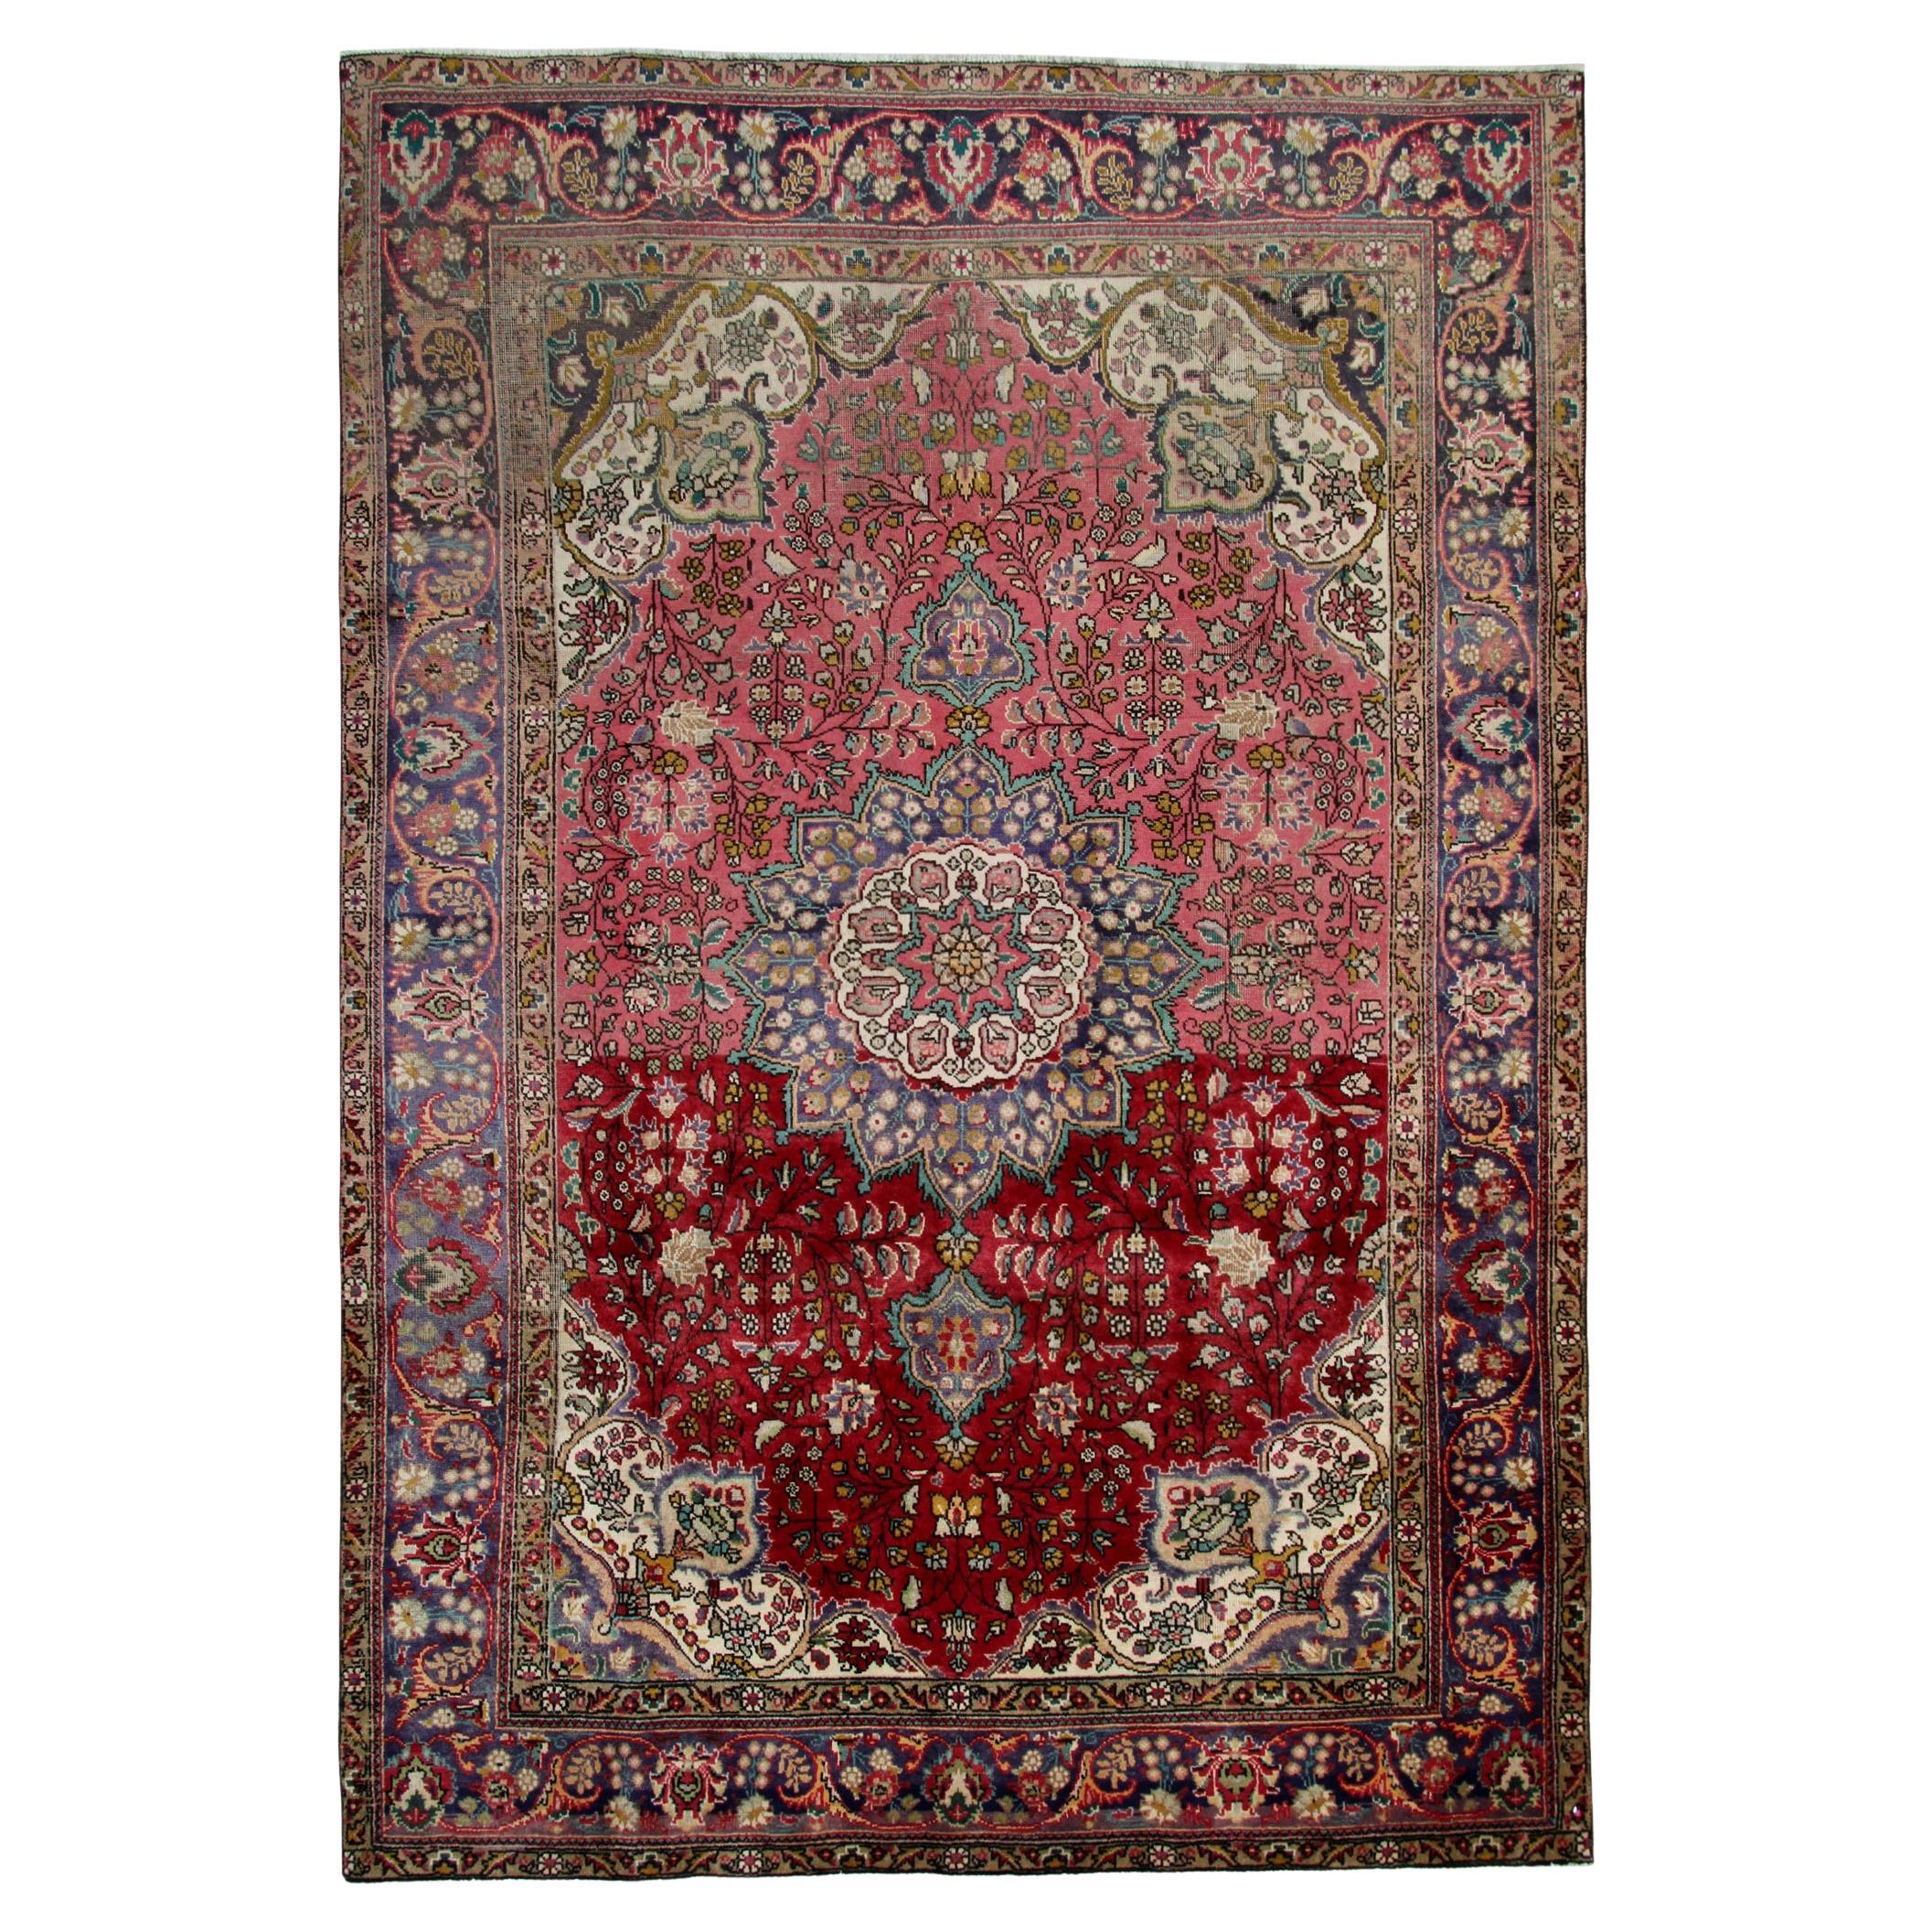 Large Vintage Carpet Red Rug Handmade Oriental Livingroom Carpet For Sale